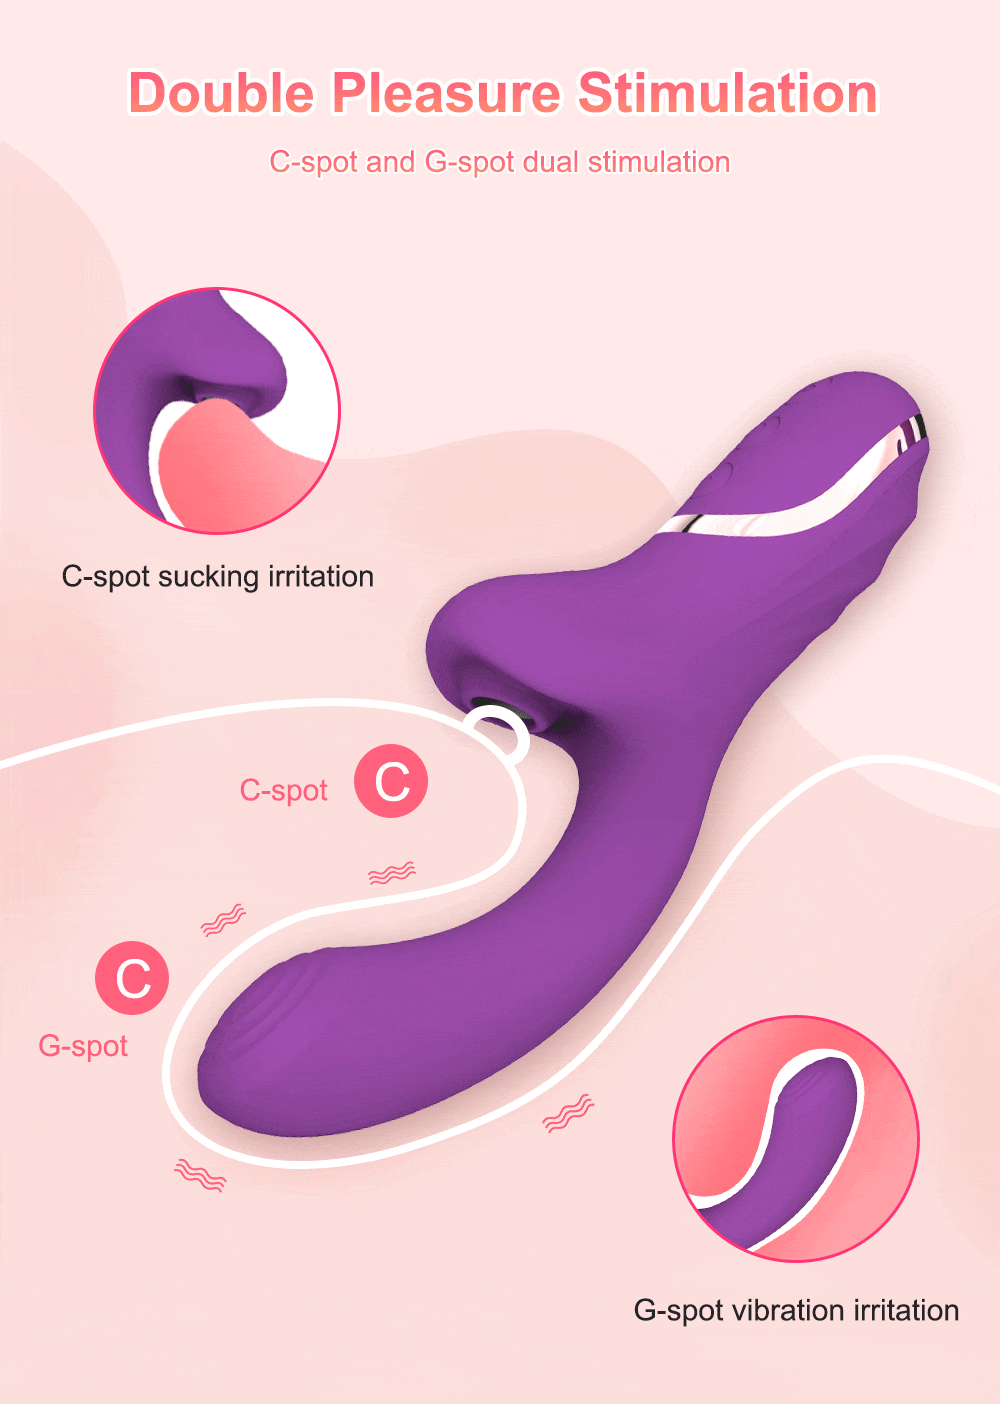 Klitoris saugendes Kaninchen Vibrator Doppelte Lust Stimulation